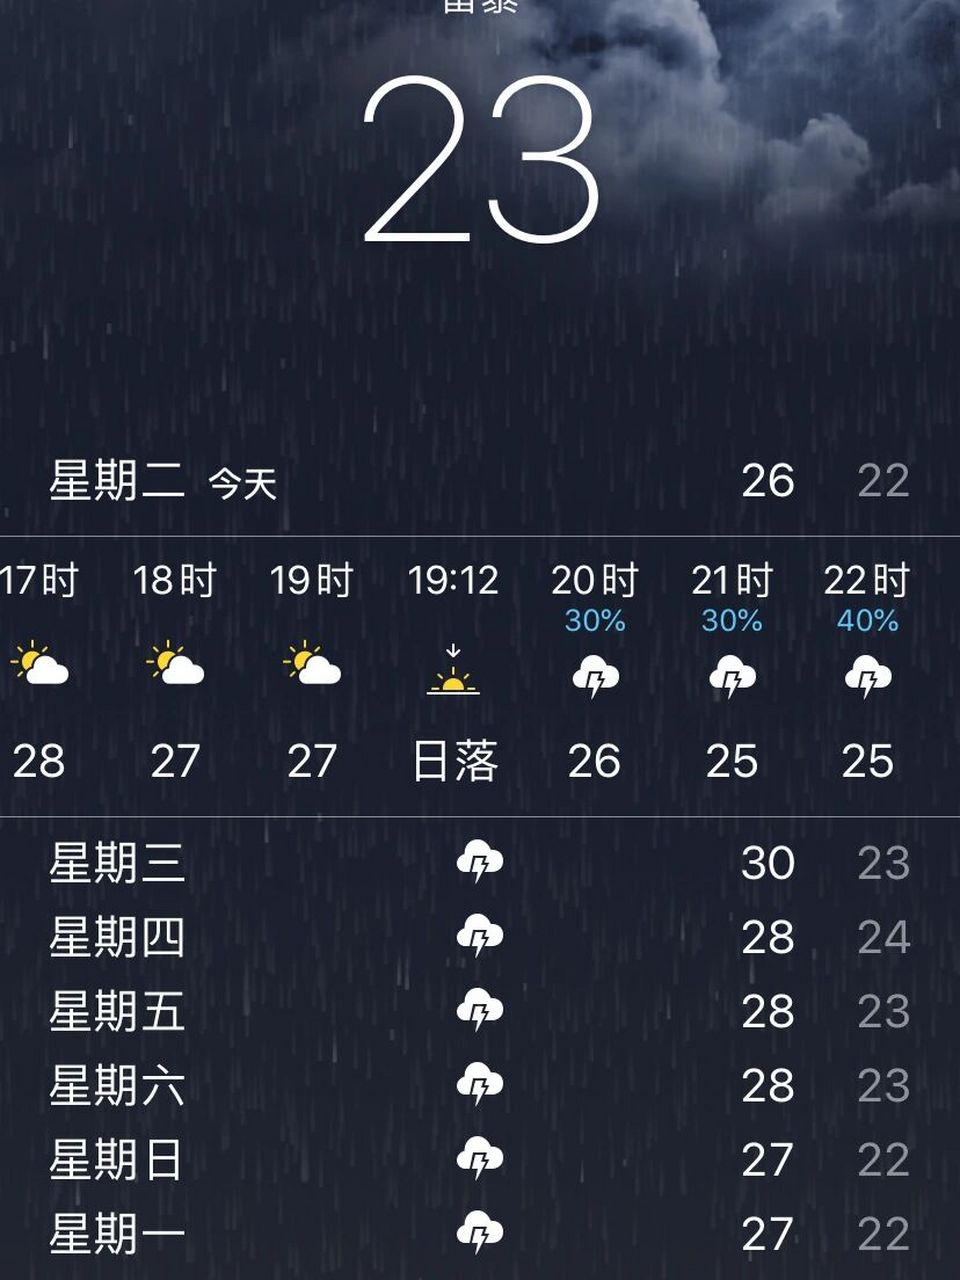 威海天气 看这天气预报,威海的雨是越下越大了 计划17